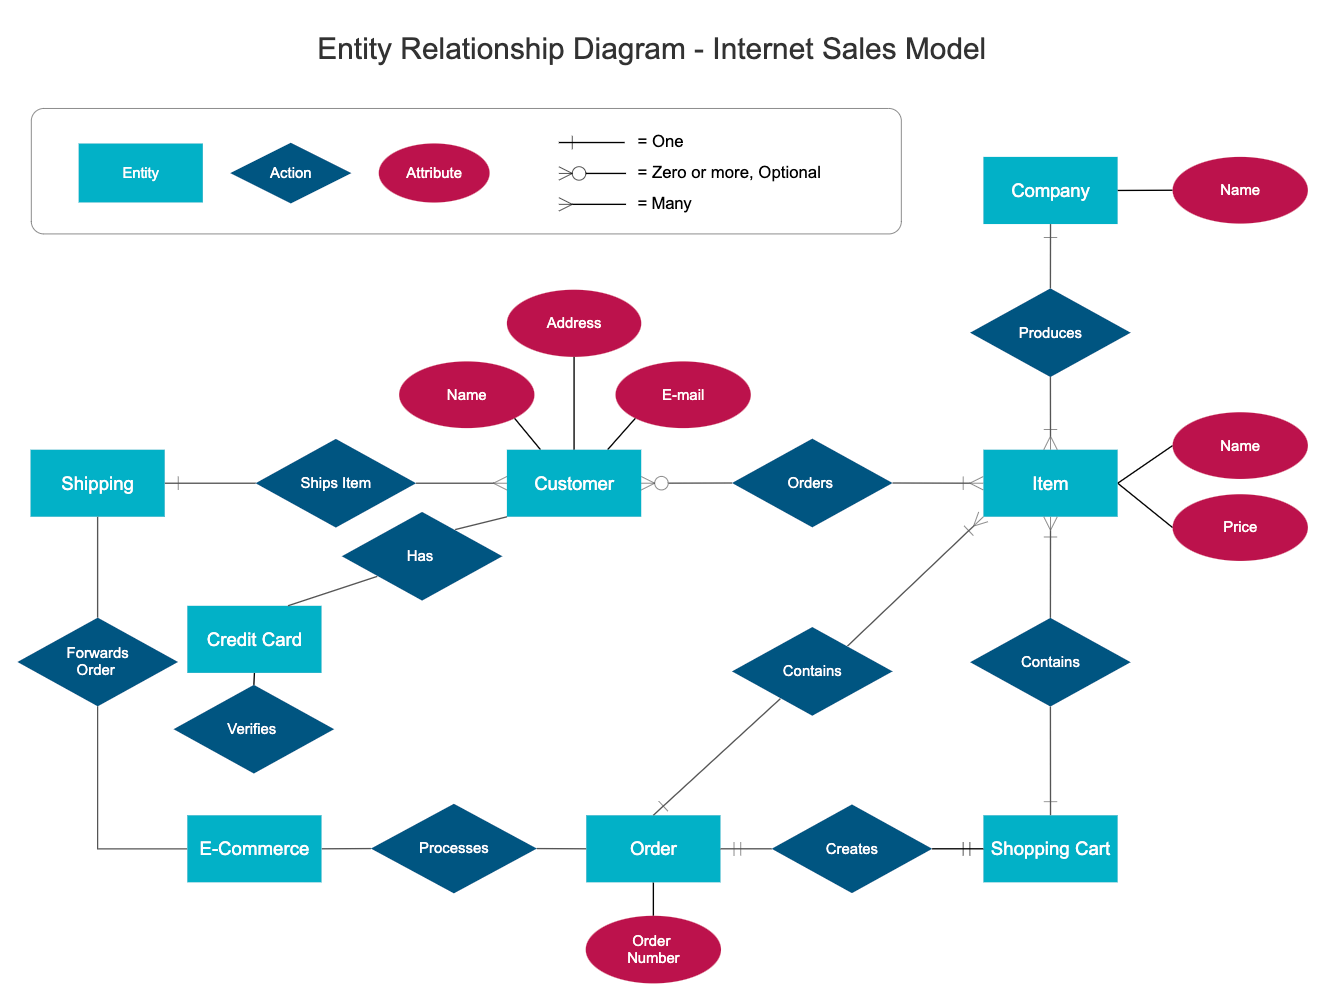 Internet sales model ERD